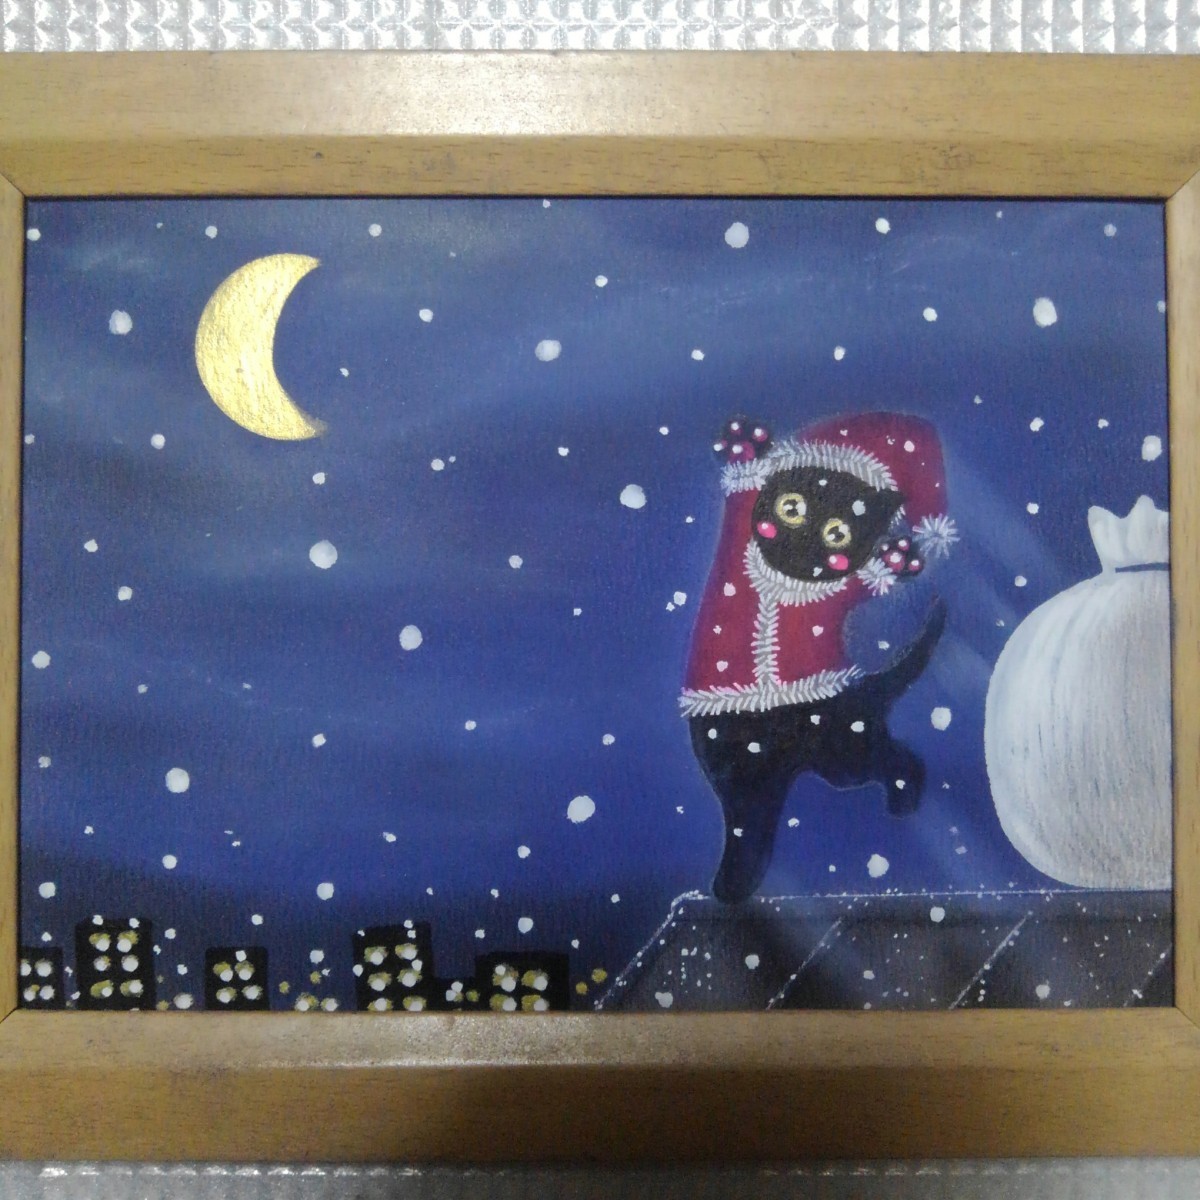 [Livraison anonyme] Tableau Chat Noir Père Noël format 2L avec cadre, ouvrages d'art, peinture, peinture au pastel, dessin au crayon